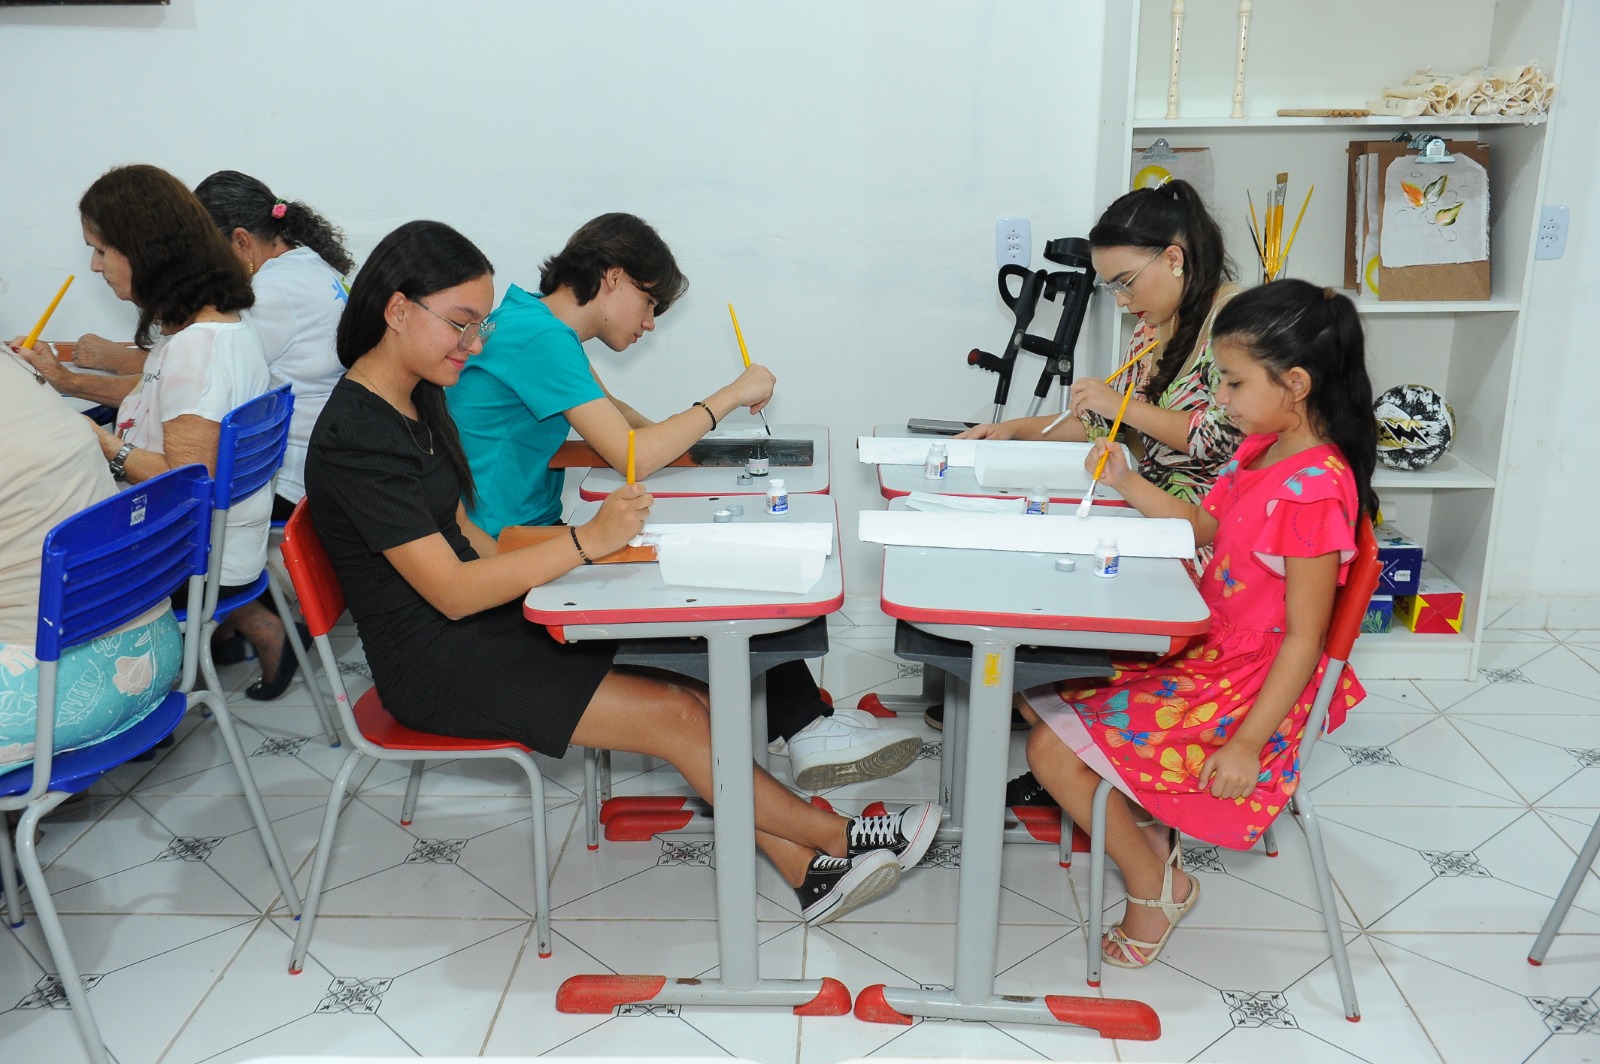 Centro-de-Formacao-SMDS-Bola-Pra-Frente-13 Prefeita Anna Lorena entrega Centro de Formação e material para o Programa Bola Pra Frente